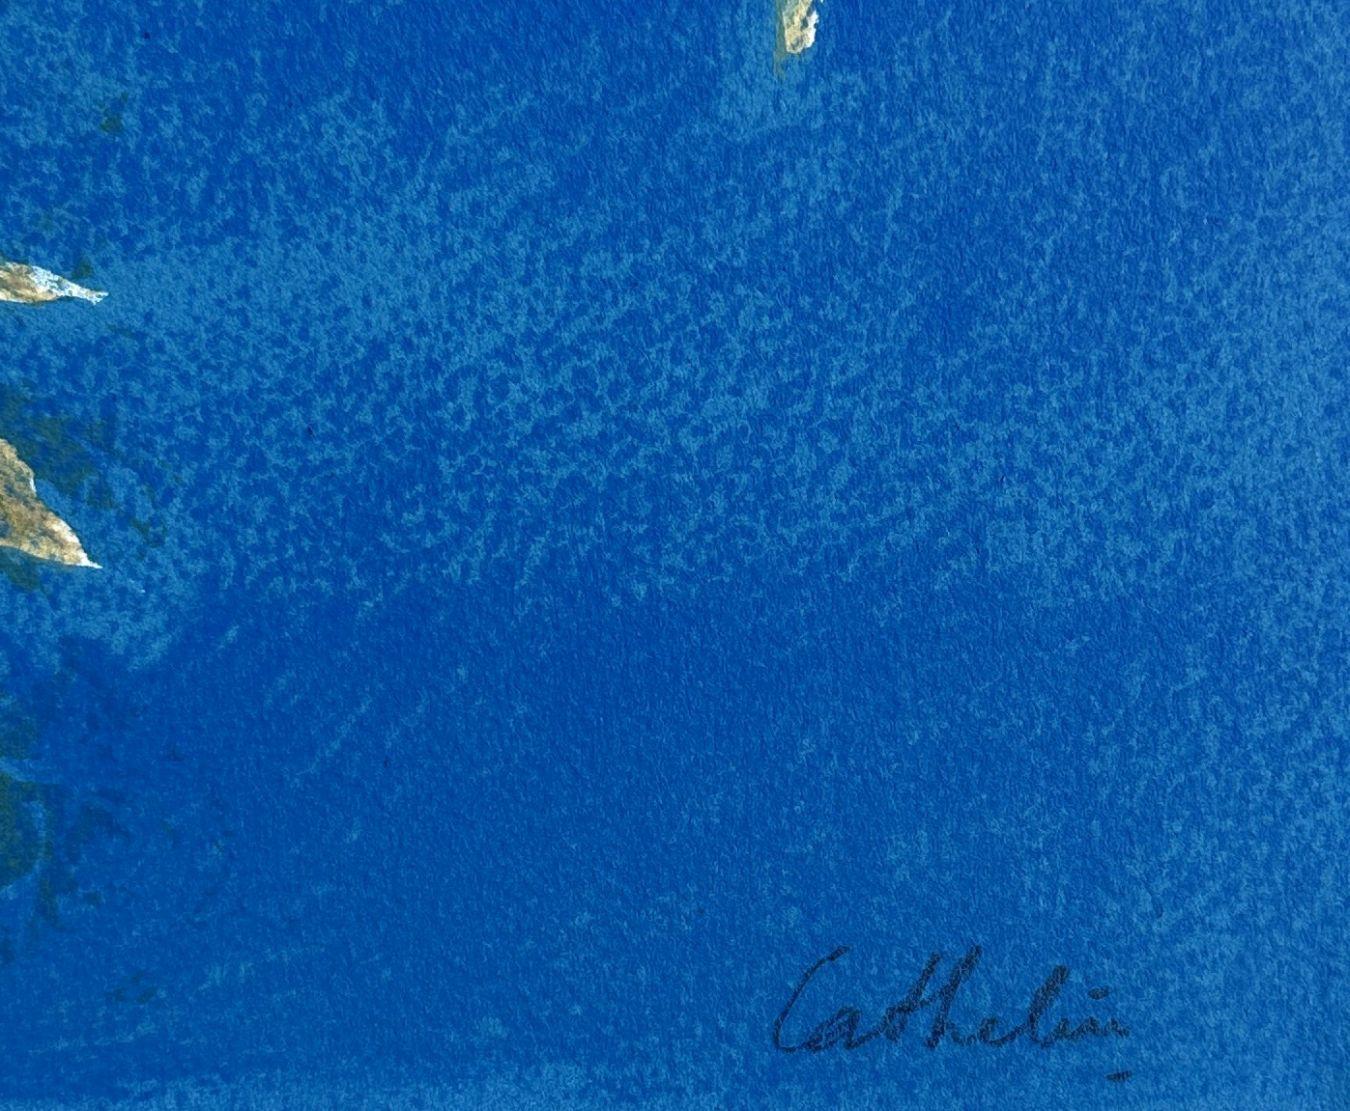 Bernard CATHELIN
Papillons et fleurs

Lithographie originale, 1988
Signé à la main au crayon
Inscrit EA (épreuve d'artiste) en marge de l'édition de 100 exemplaires
Sur papier Arches, format 40 x 31 (c. 15 8/10 x 12 1/5 inches)
Très bon